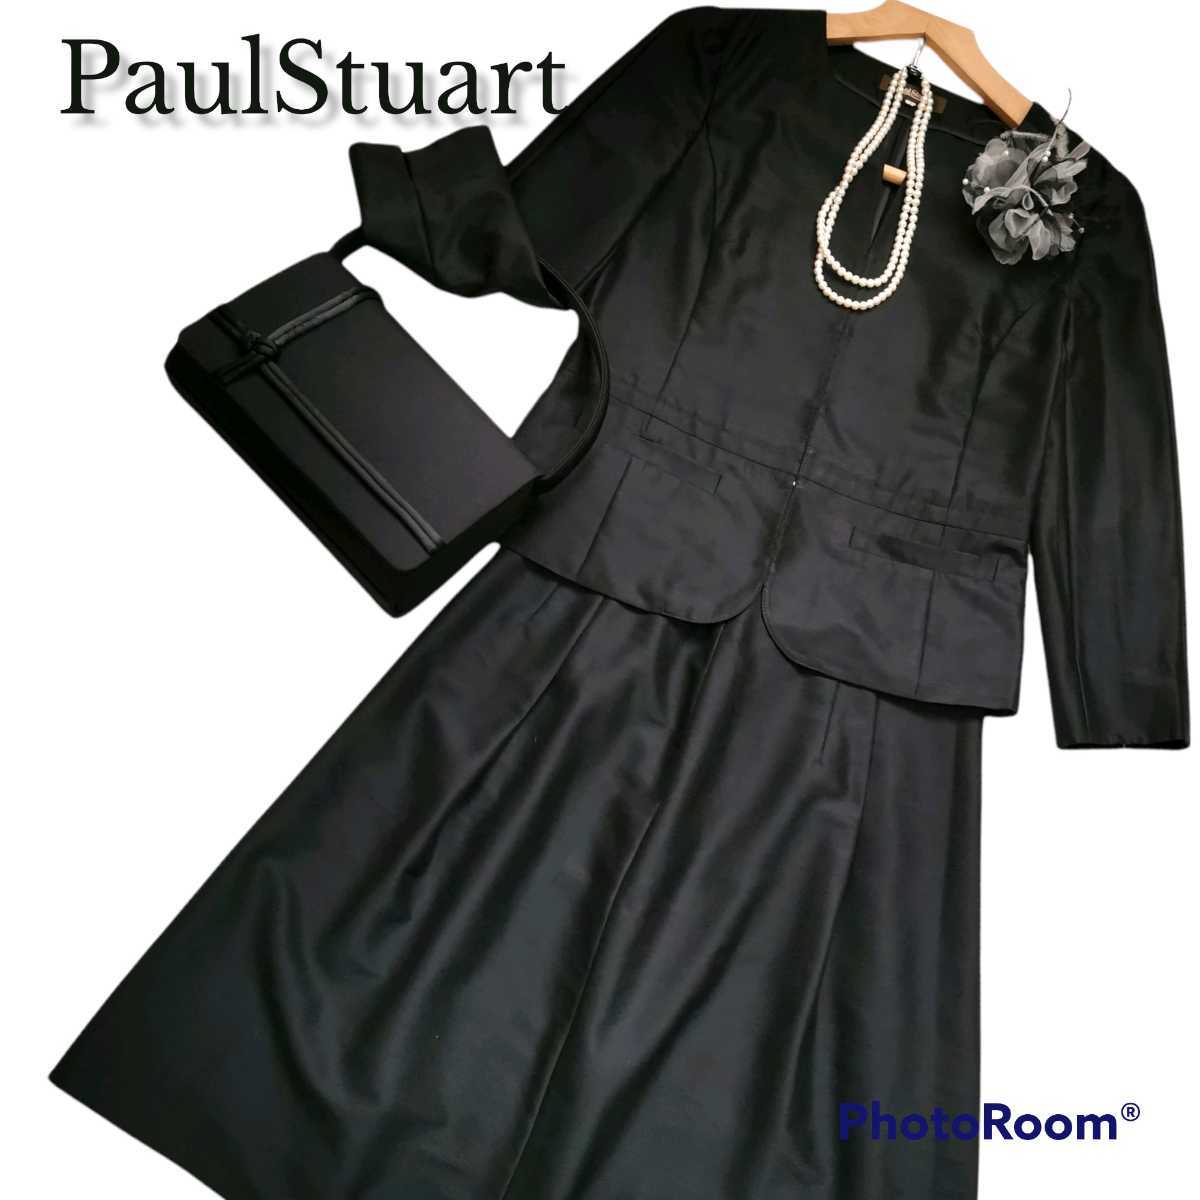 PaulStuart paul (pole) Stuart setup suit no color jacket black black three . association size 6 go in . type graduation ceremony 